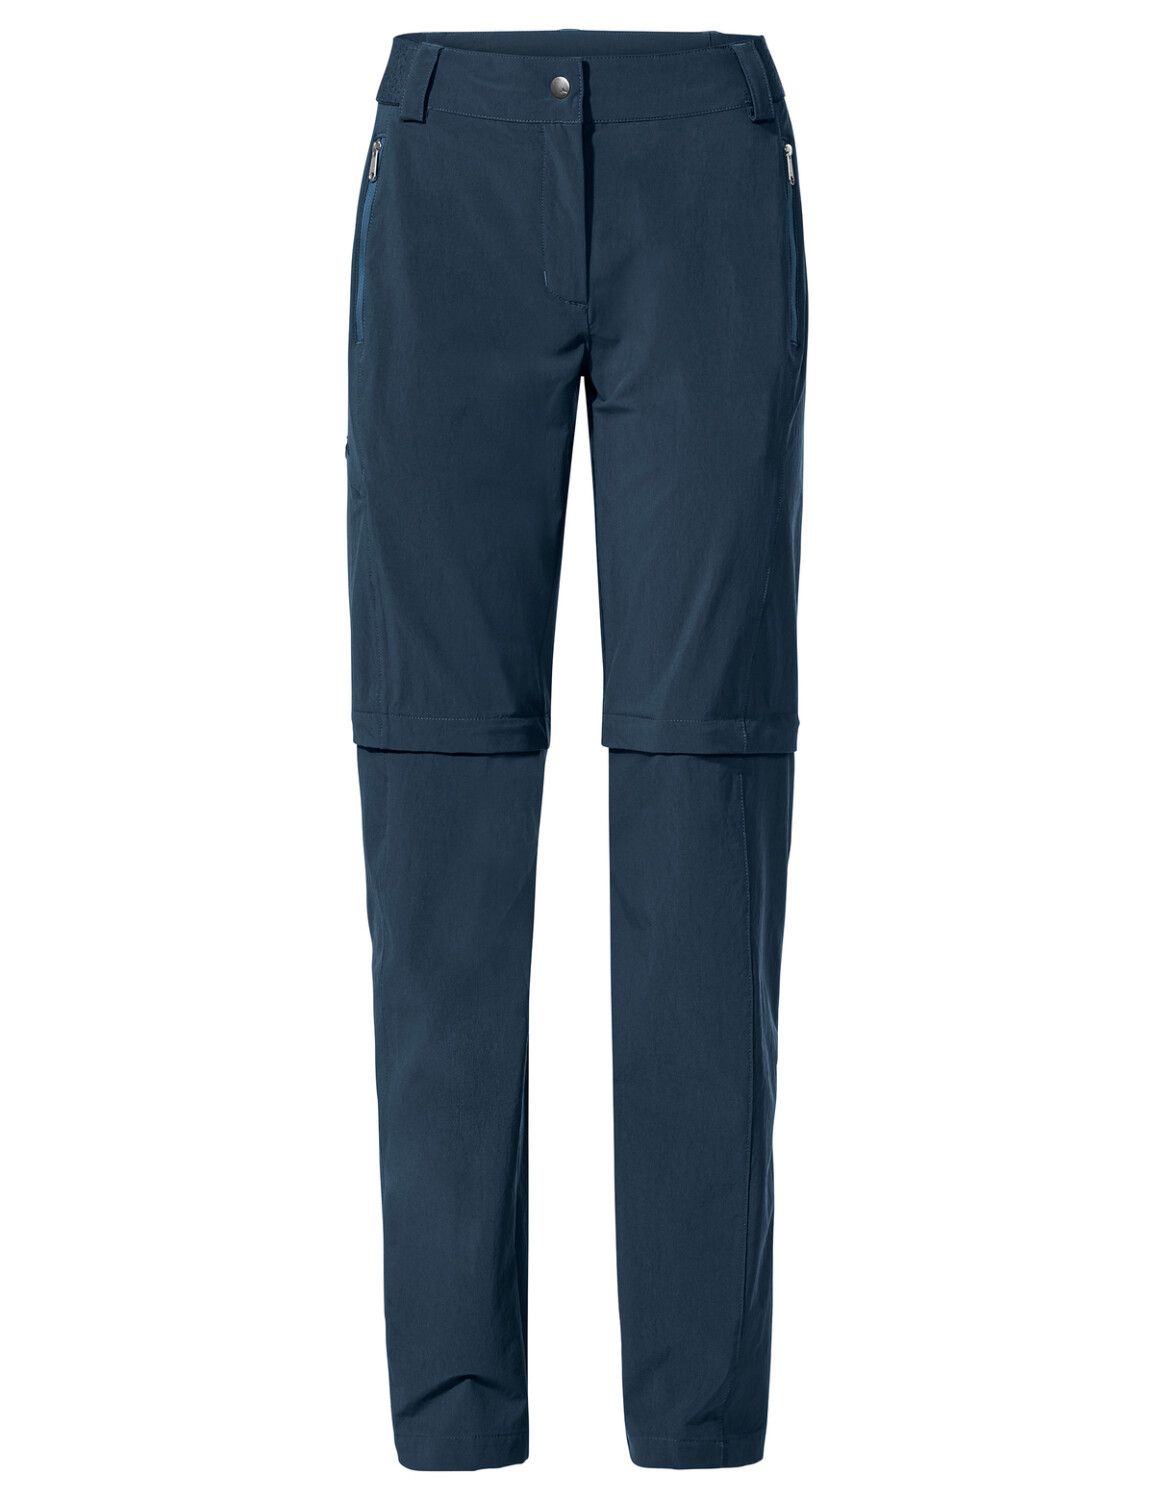 VAUDE Women's Farley Stretch ZO T-Zip Pants II (Bild 47)